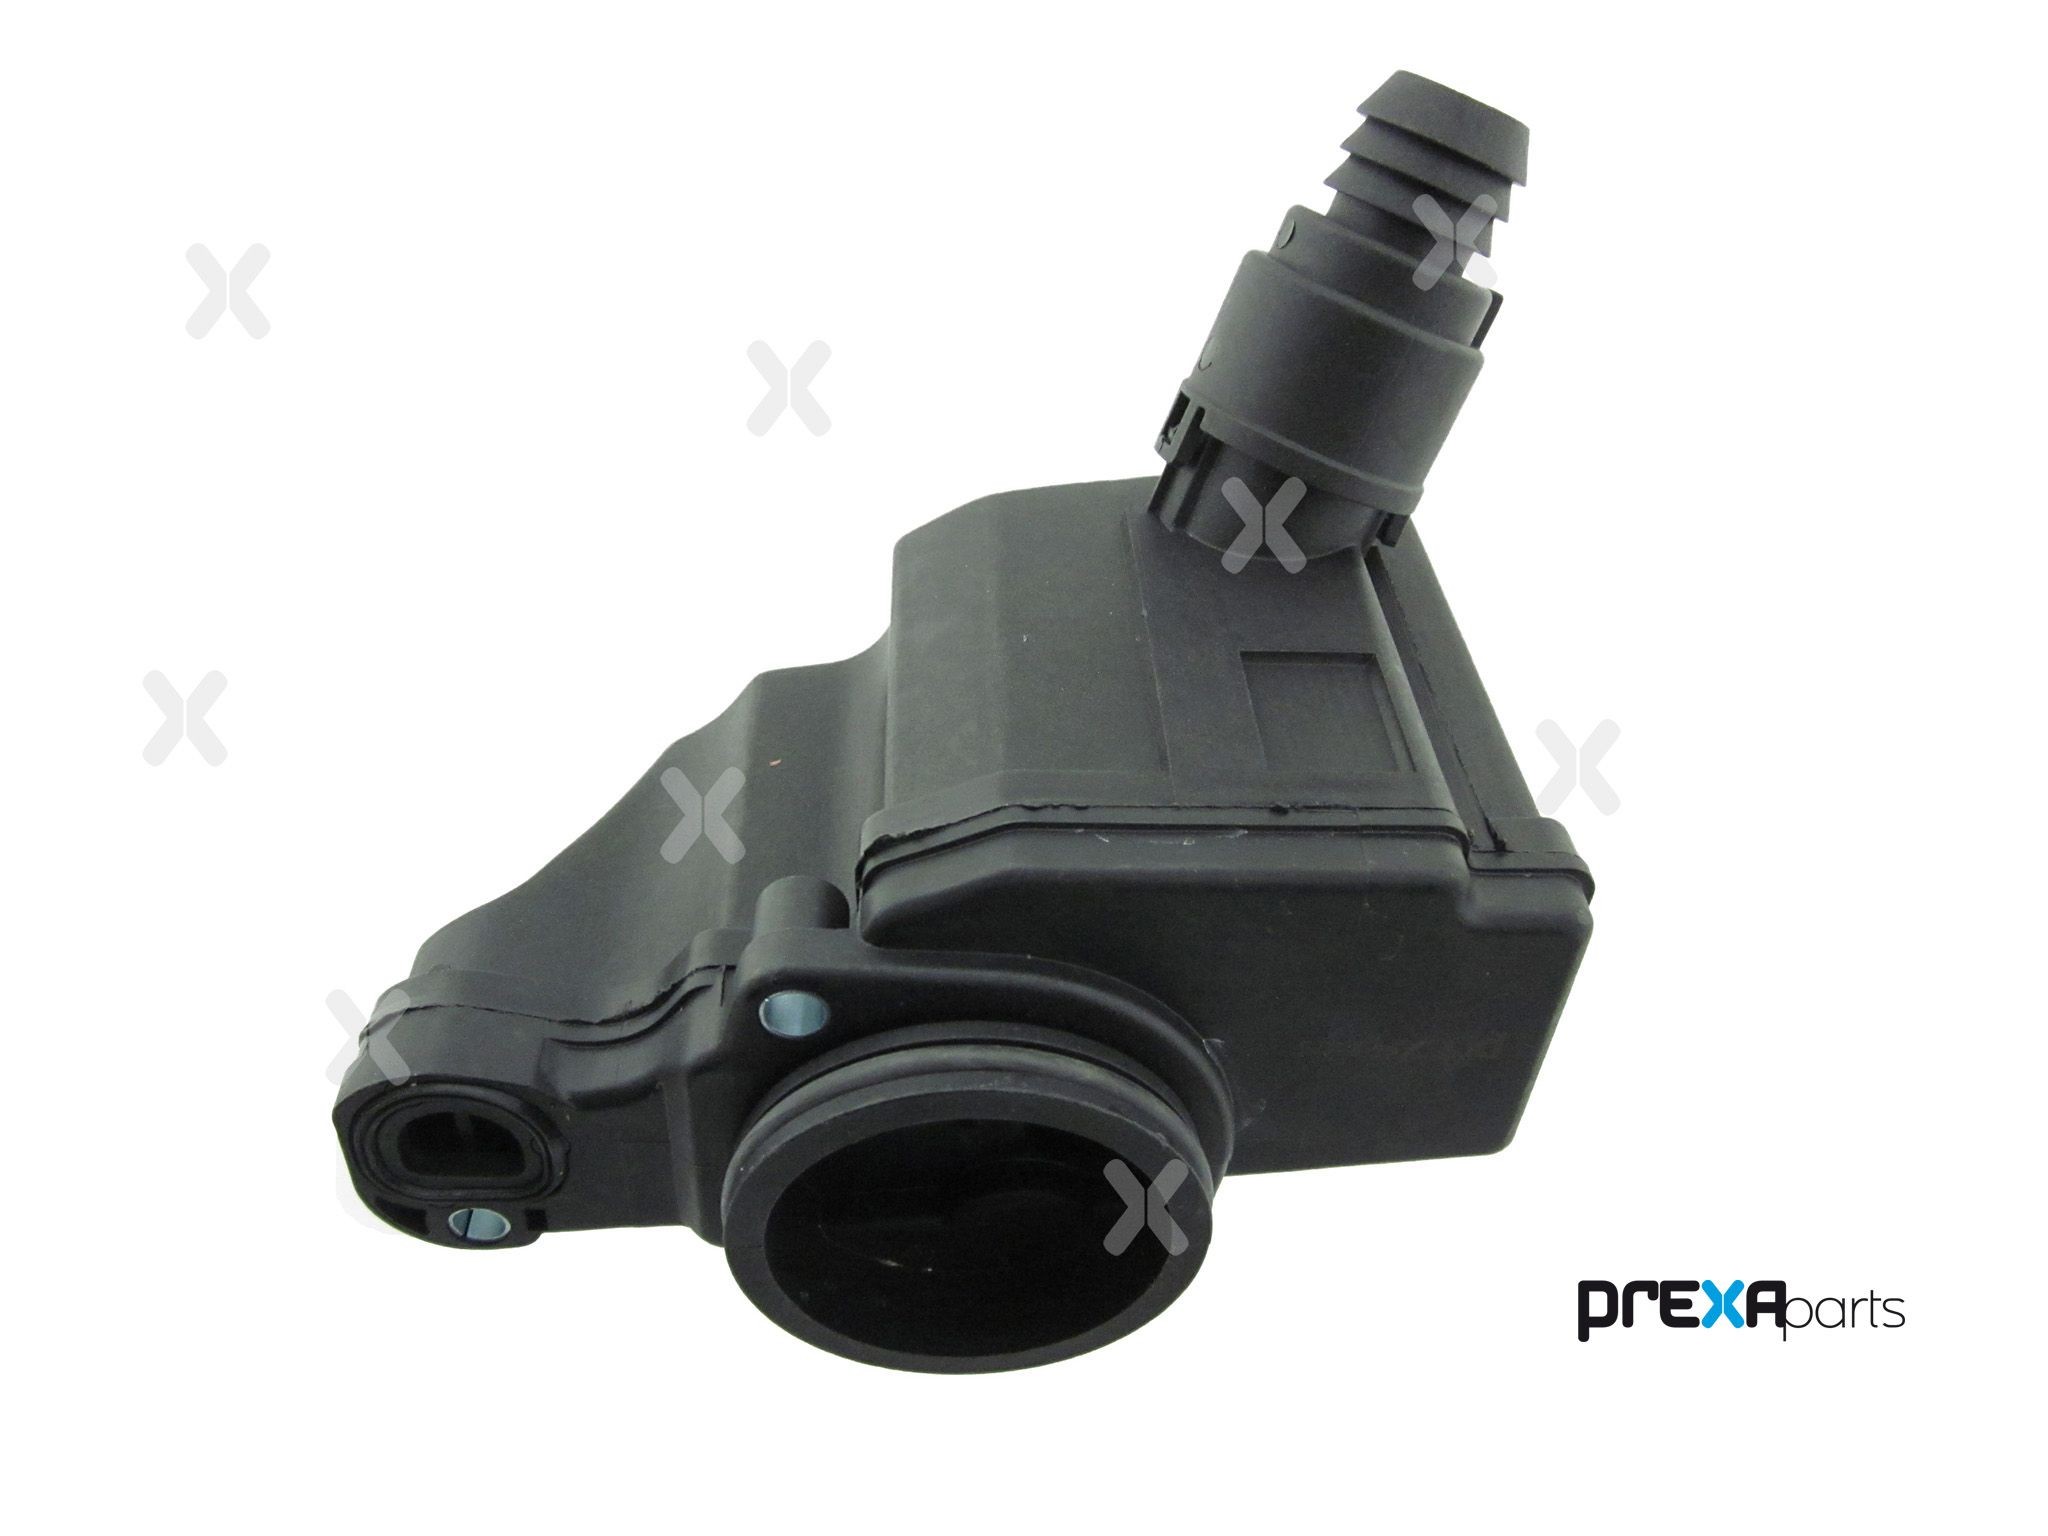 PREXAparts Exhaust sensor P304043 buy